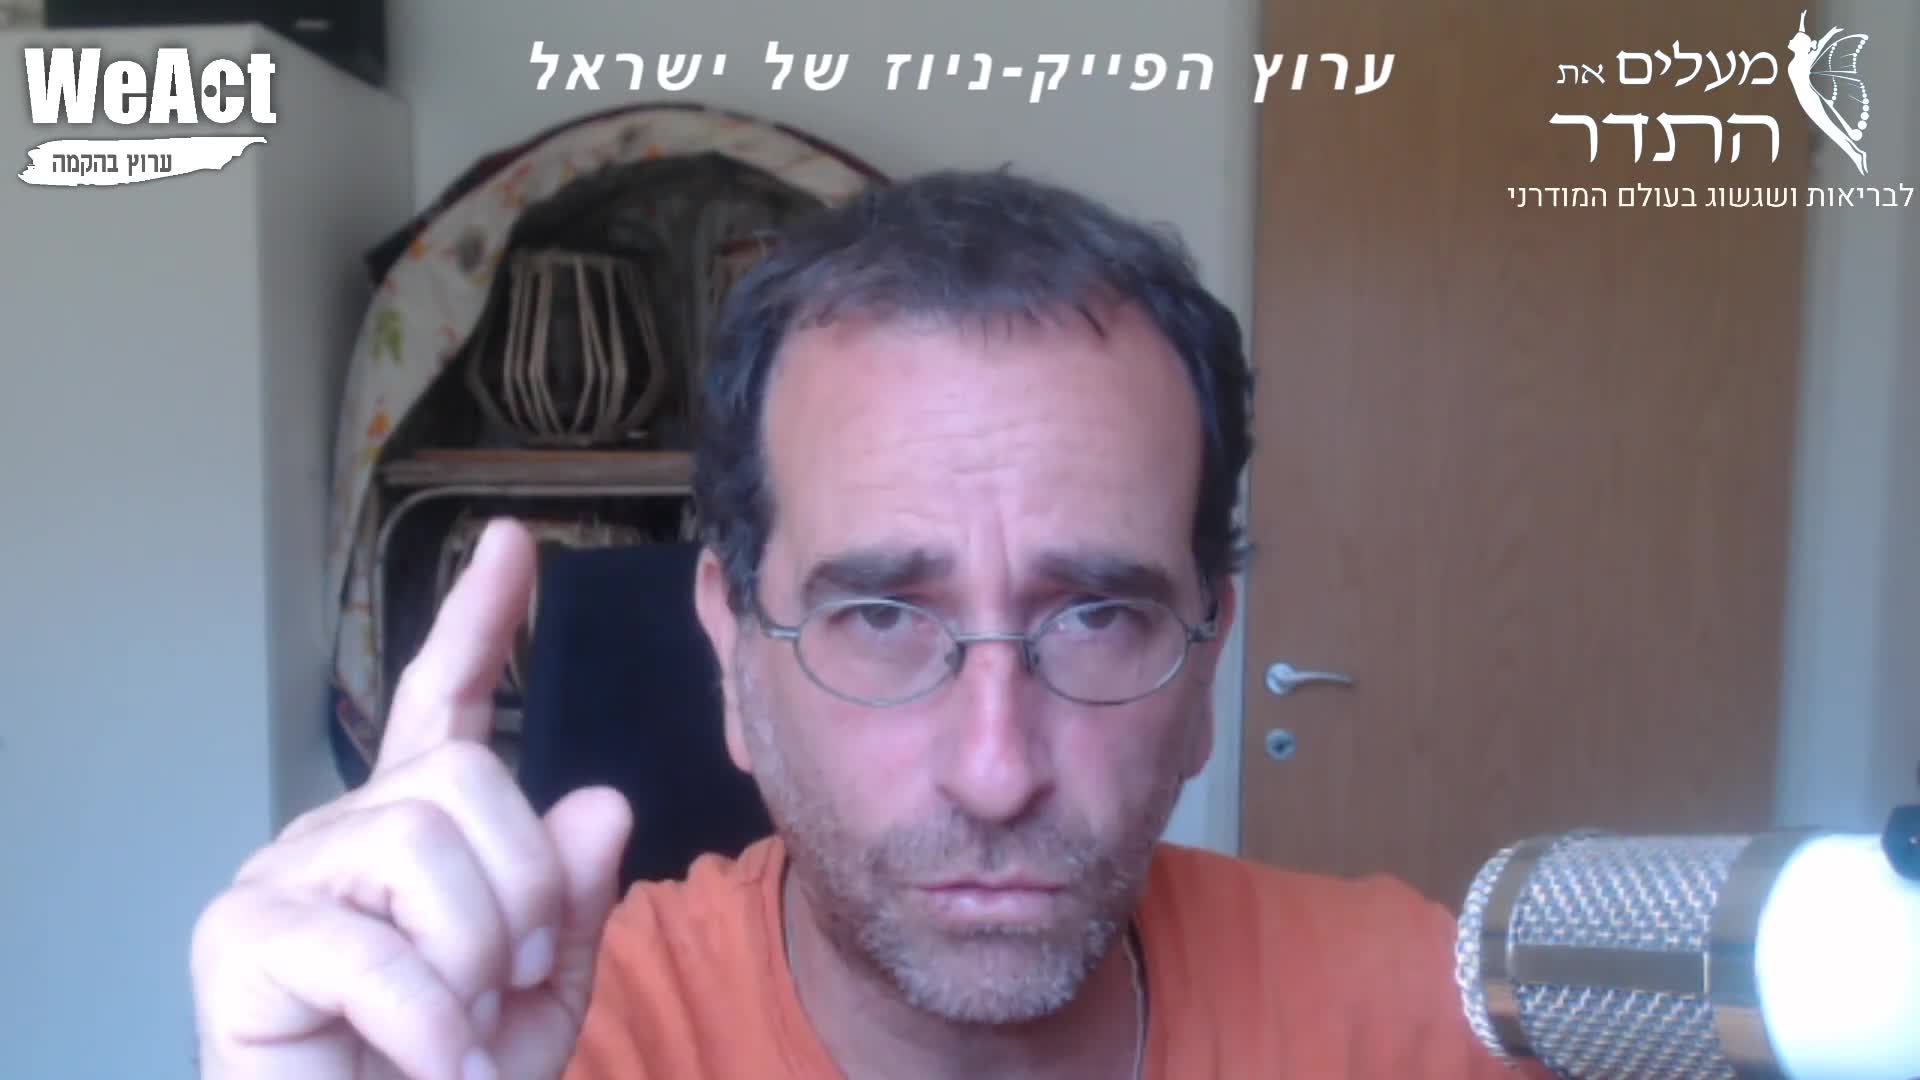 תוכנית הפייק ניוז של ישראל עם שי דנון - הפרוטוקולים של זקני האום